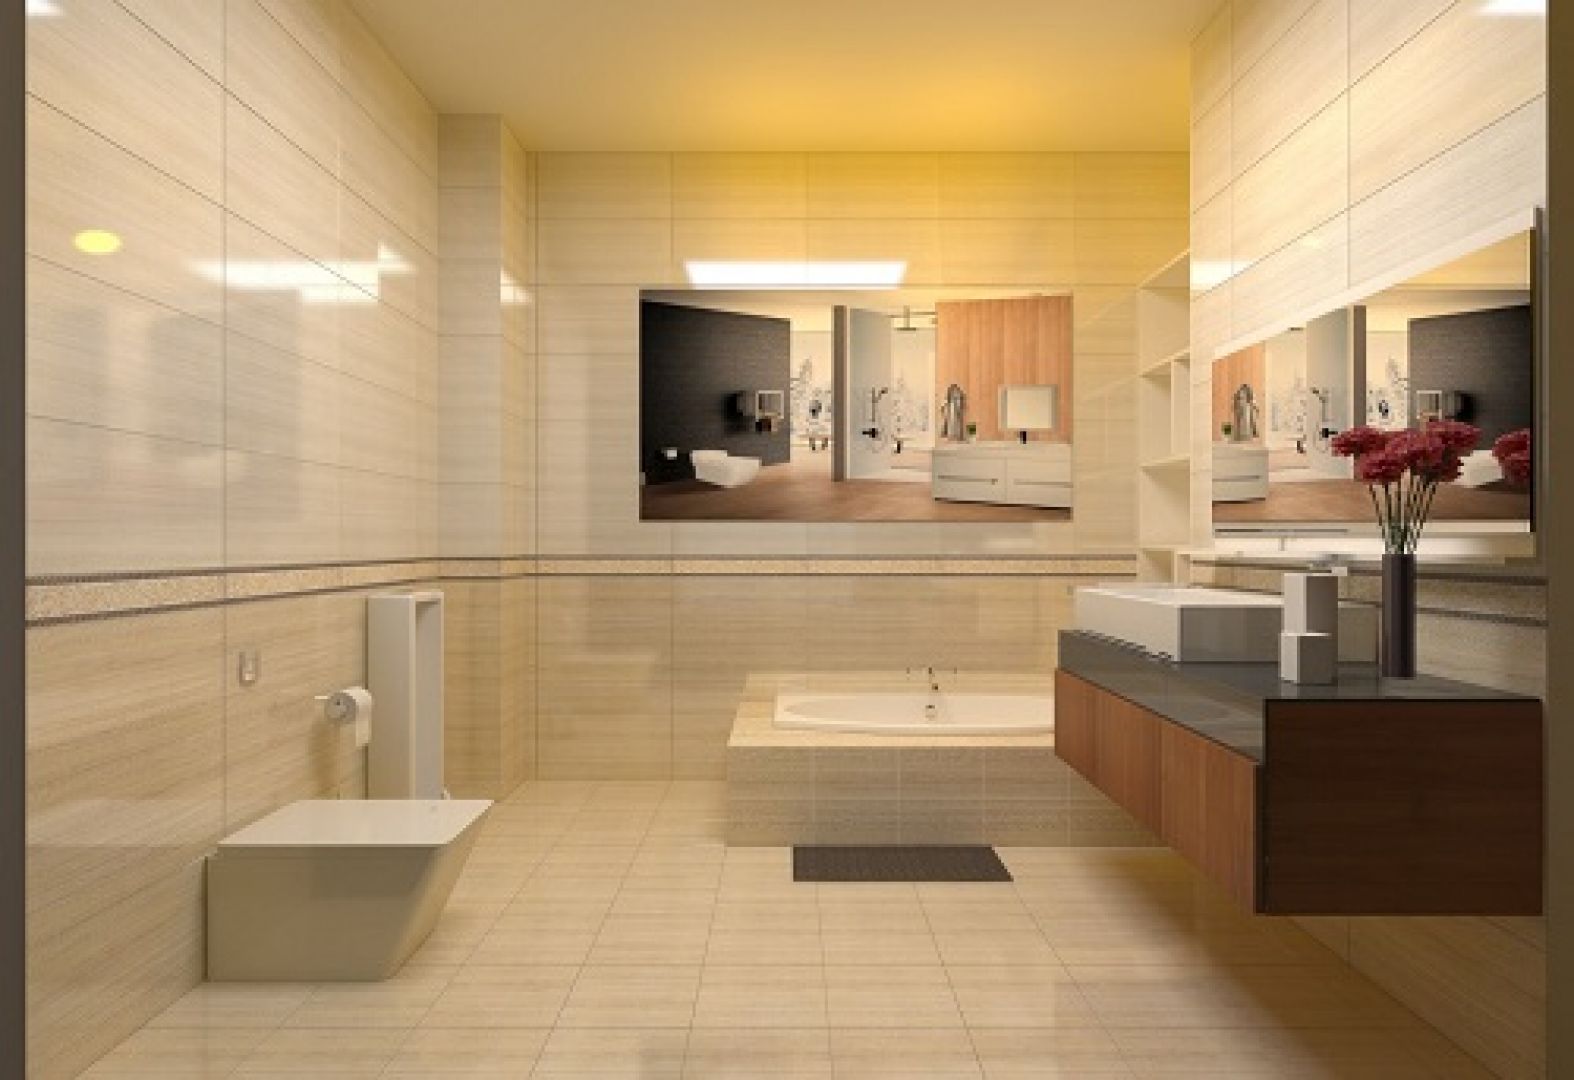 Chọn gạch lát nền nhà tắm đúng cách sẽ giúp cho phòng tắm của bạn trở nên đẹp hơn và tiện ích hơn bao giờ hết. Với nhiều mẫu mã phong phú và đa dạng, bạn có thể lựa chọn cho mình những sản phẩm chất lượng để tạo ra không gian phòng tắm trong mơ. Hãy cùng xem hình ảnh để tìm ra những giải pháp tối ưu cho phòng tắm của bạn.